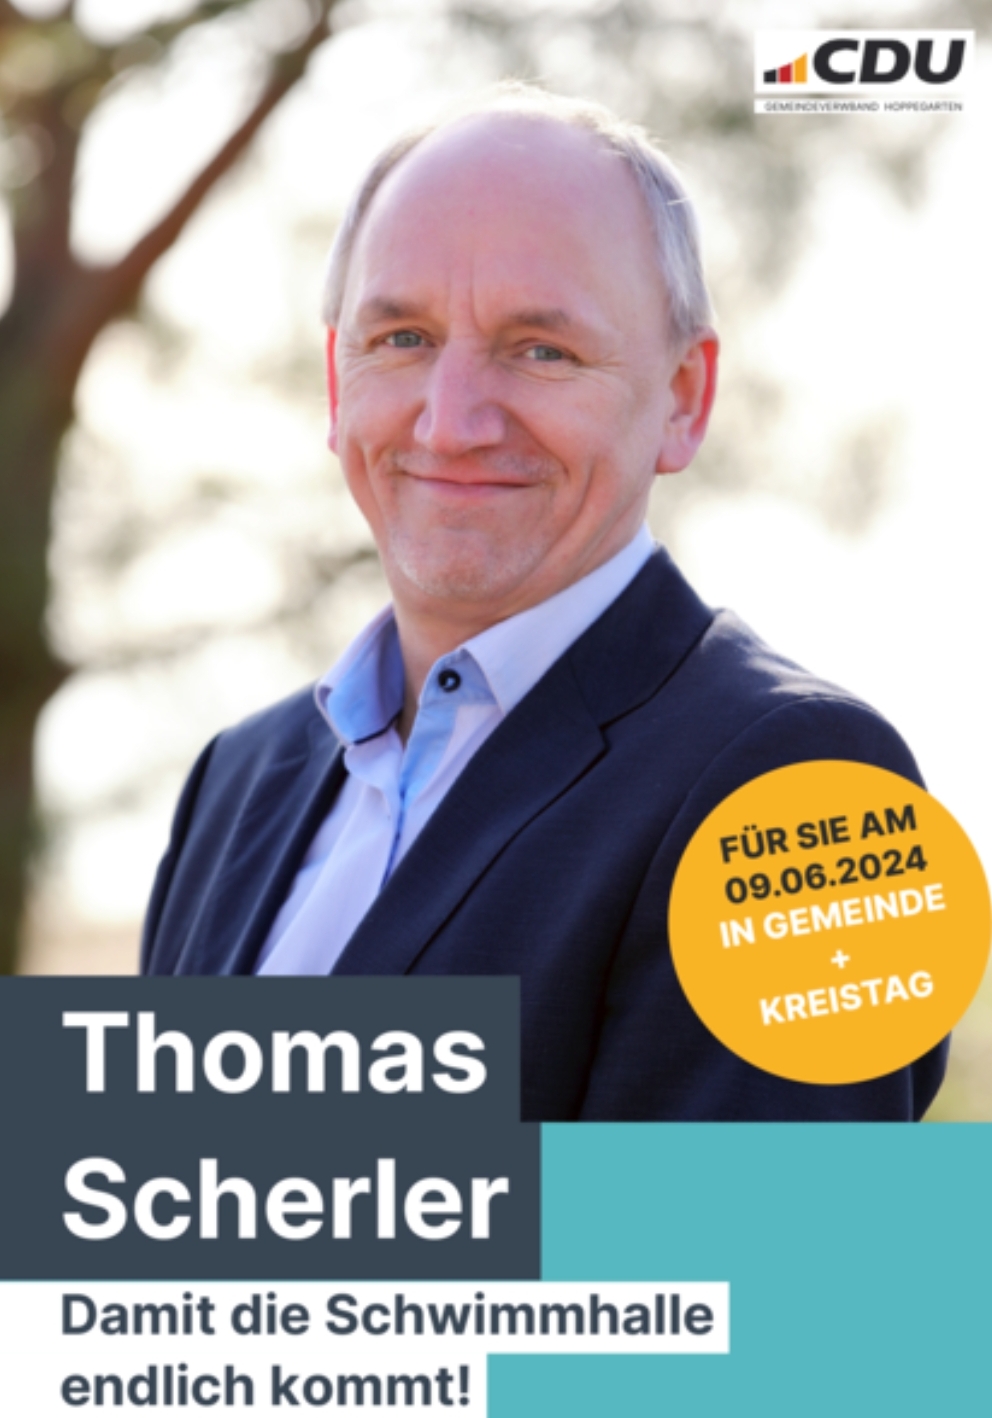 Thomas Scherler